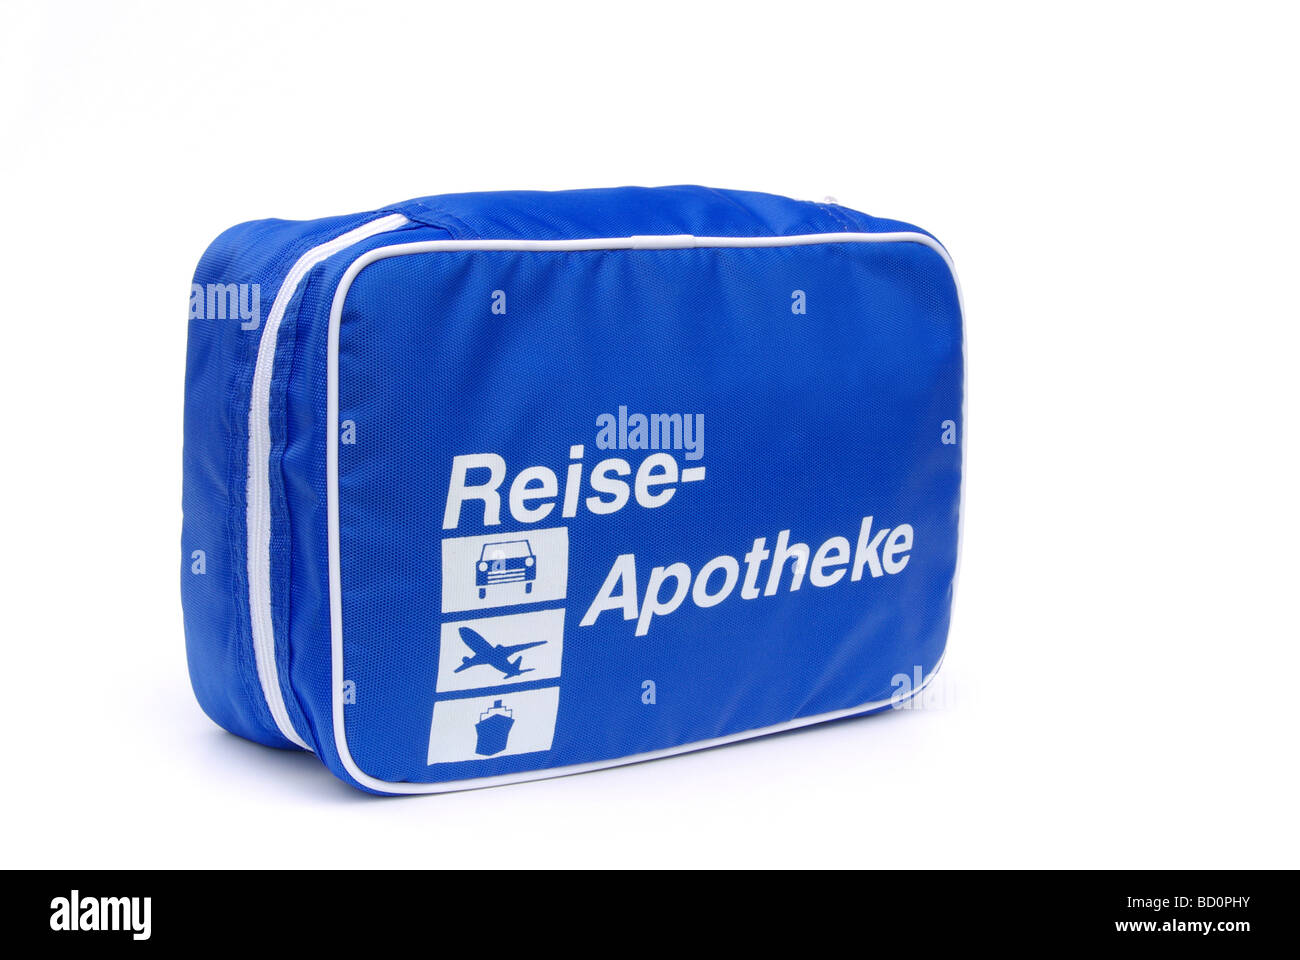 Reiseapotheke first aid travel kit 02 Stock Photo